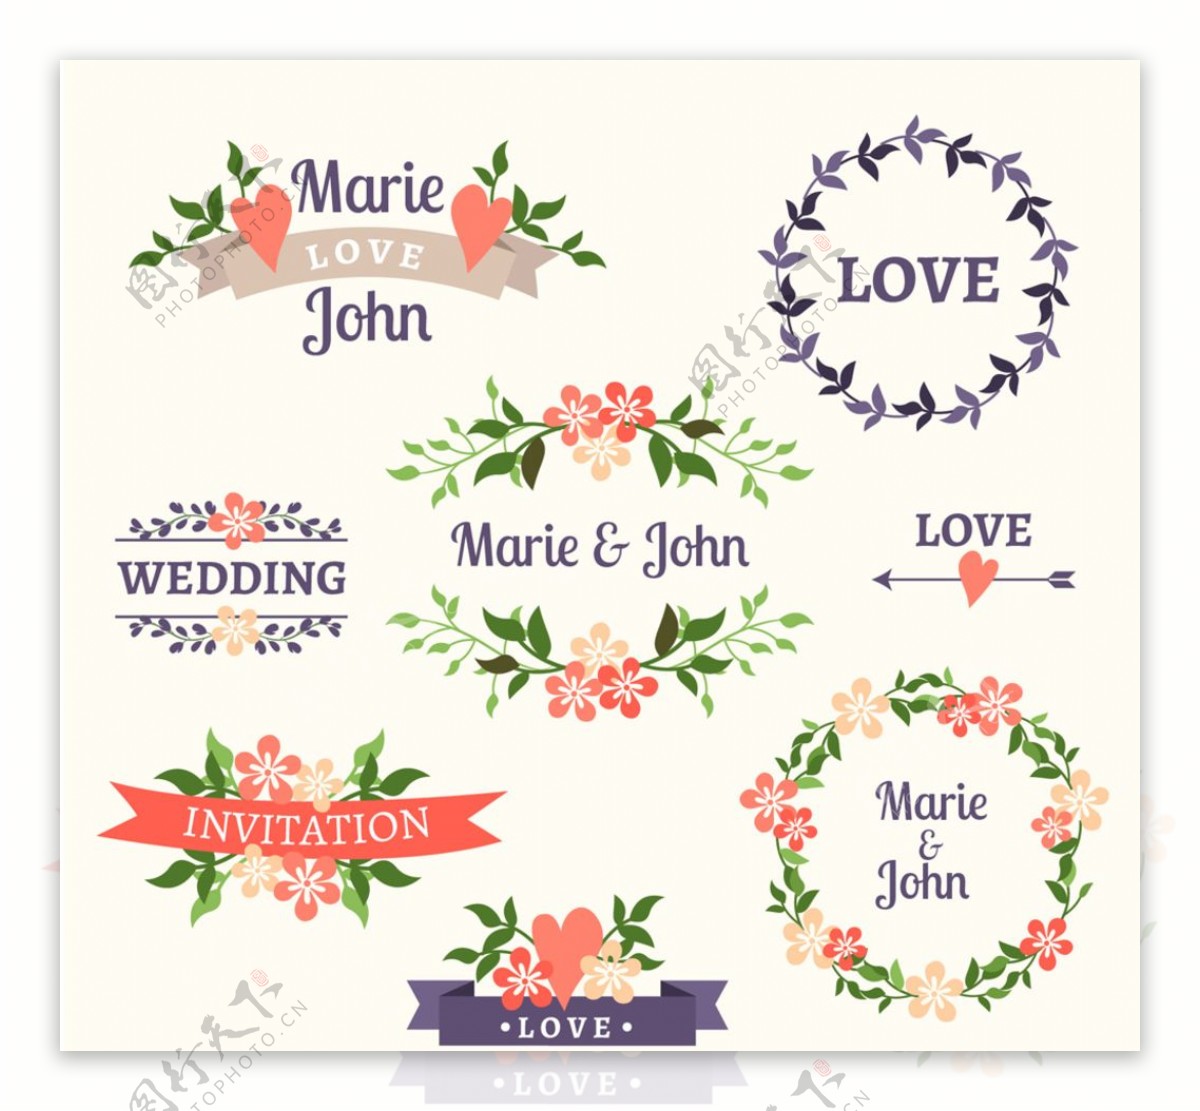 彩色婚礼花卉标签